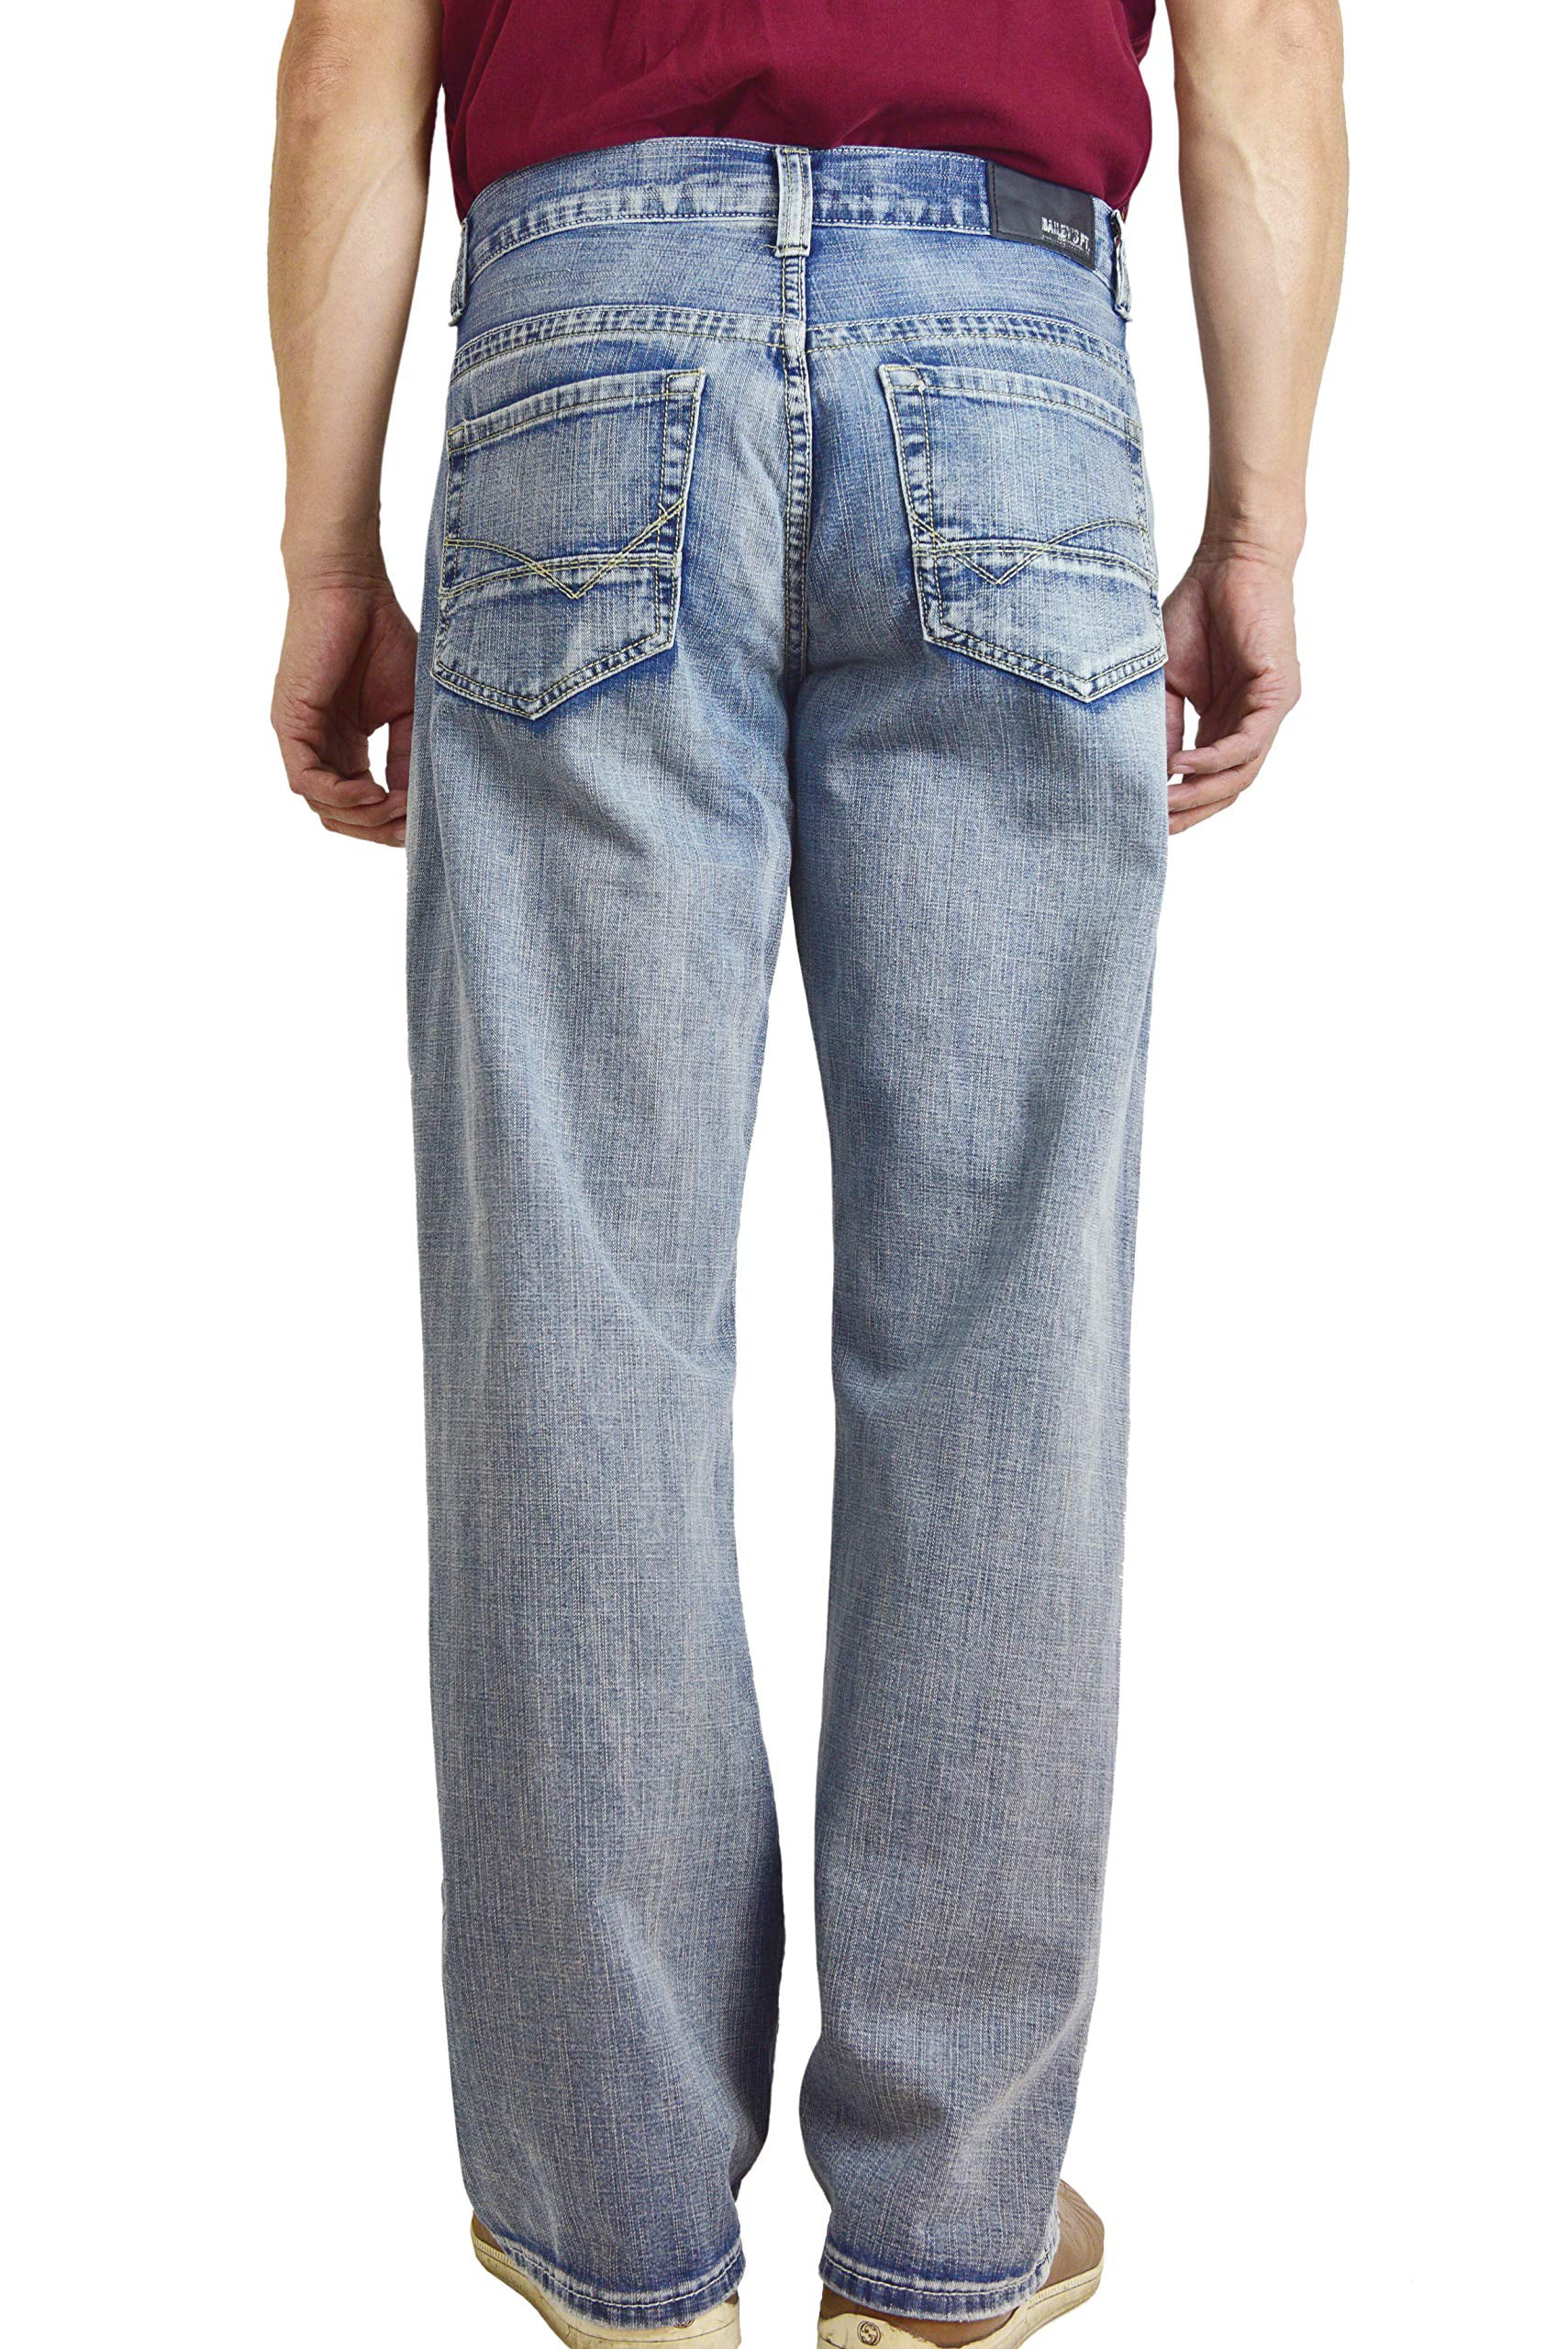 levi 580 jeans plus size